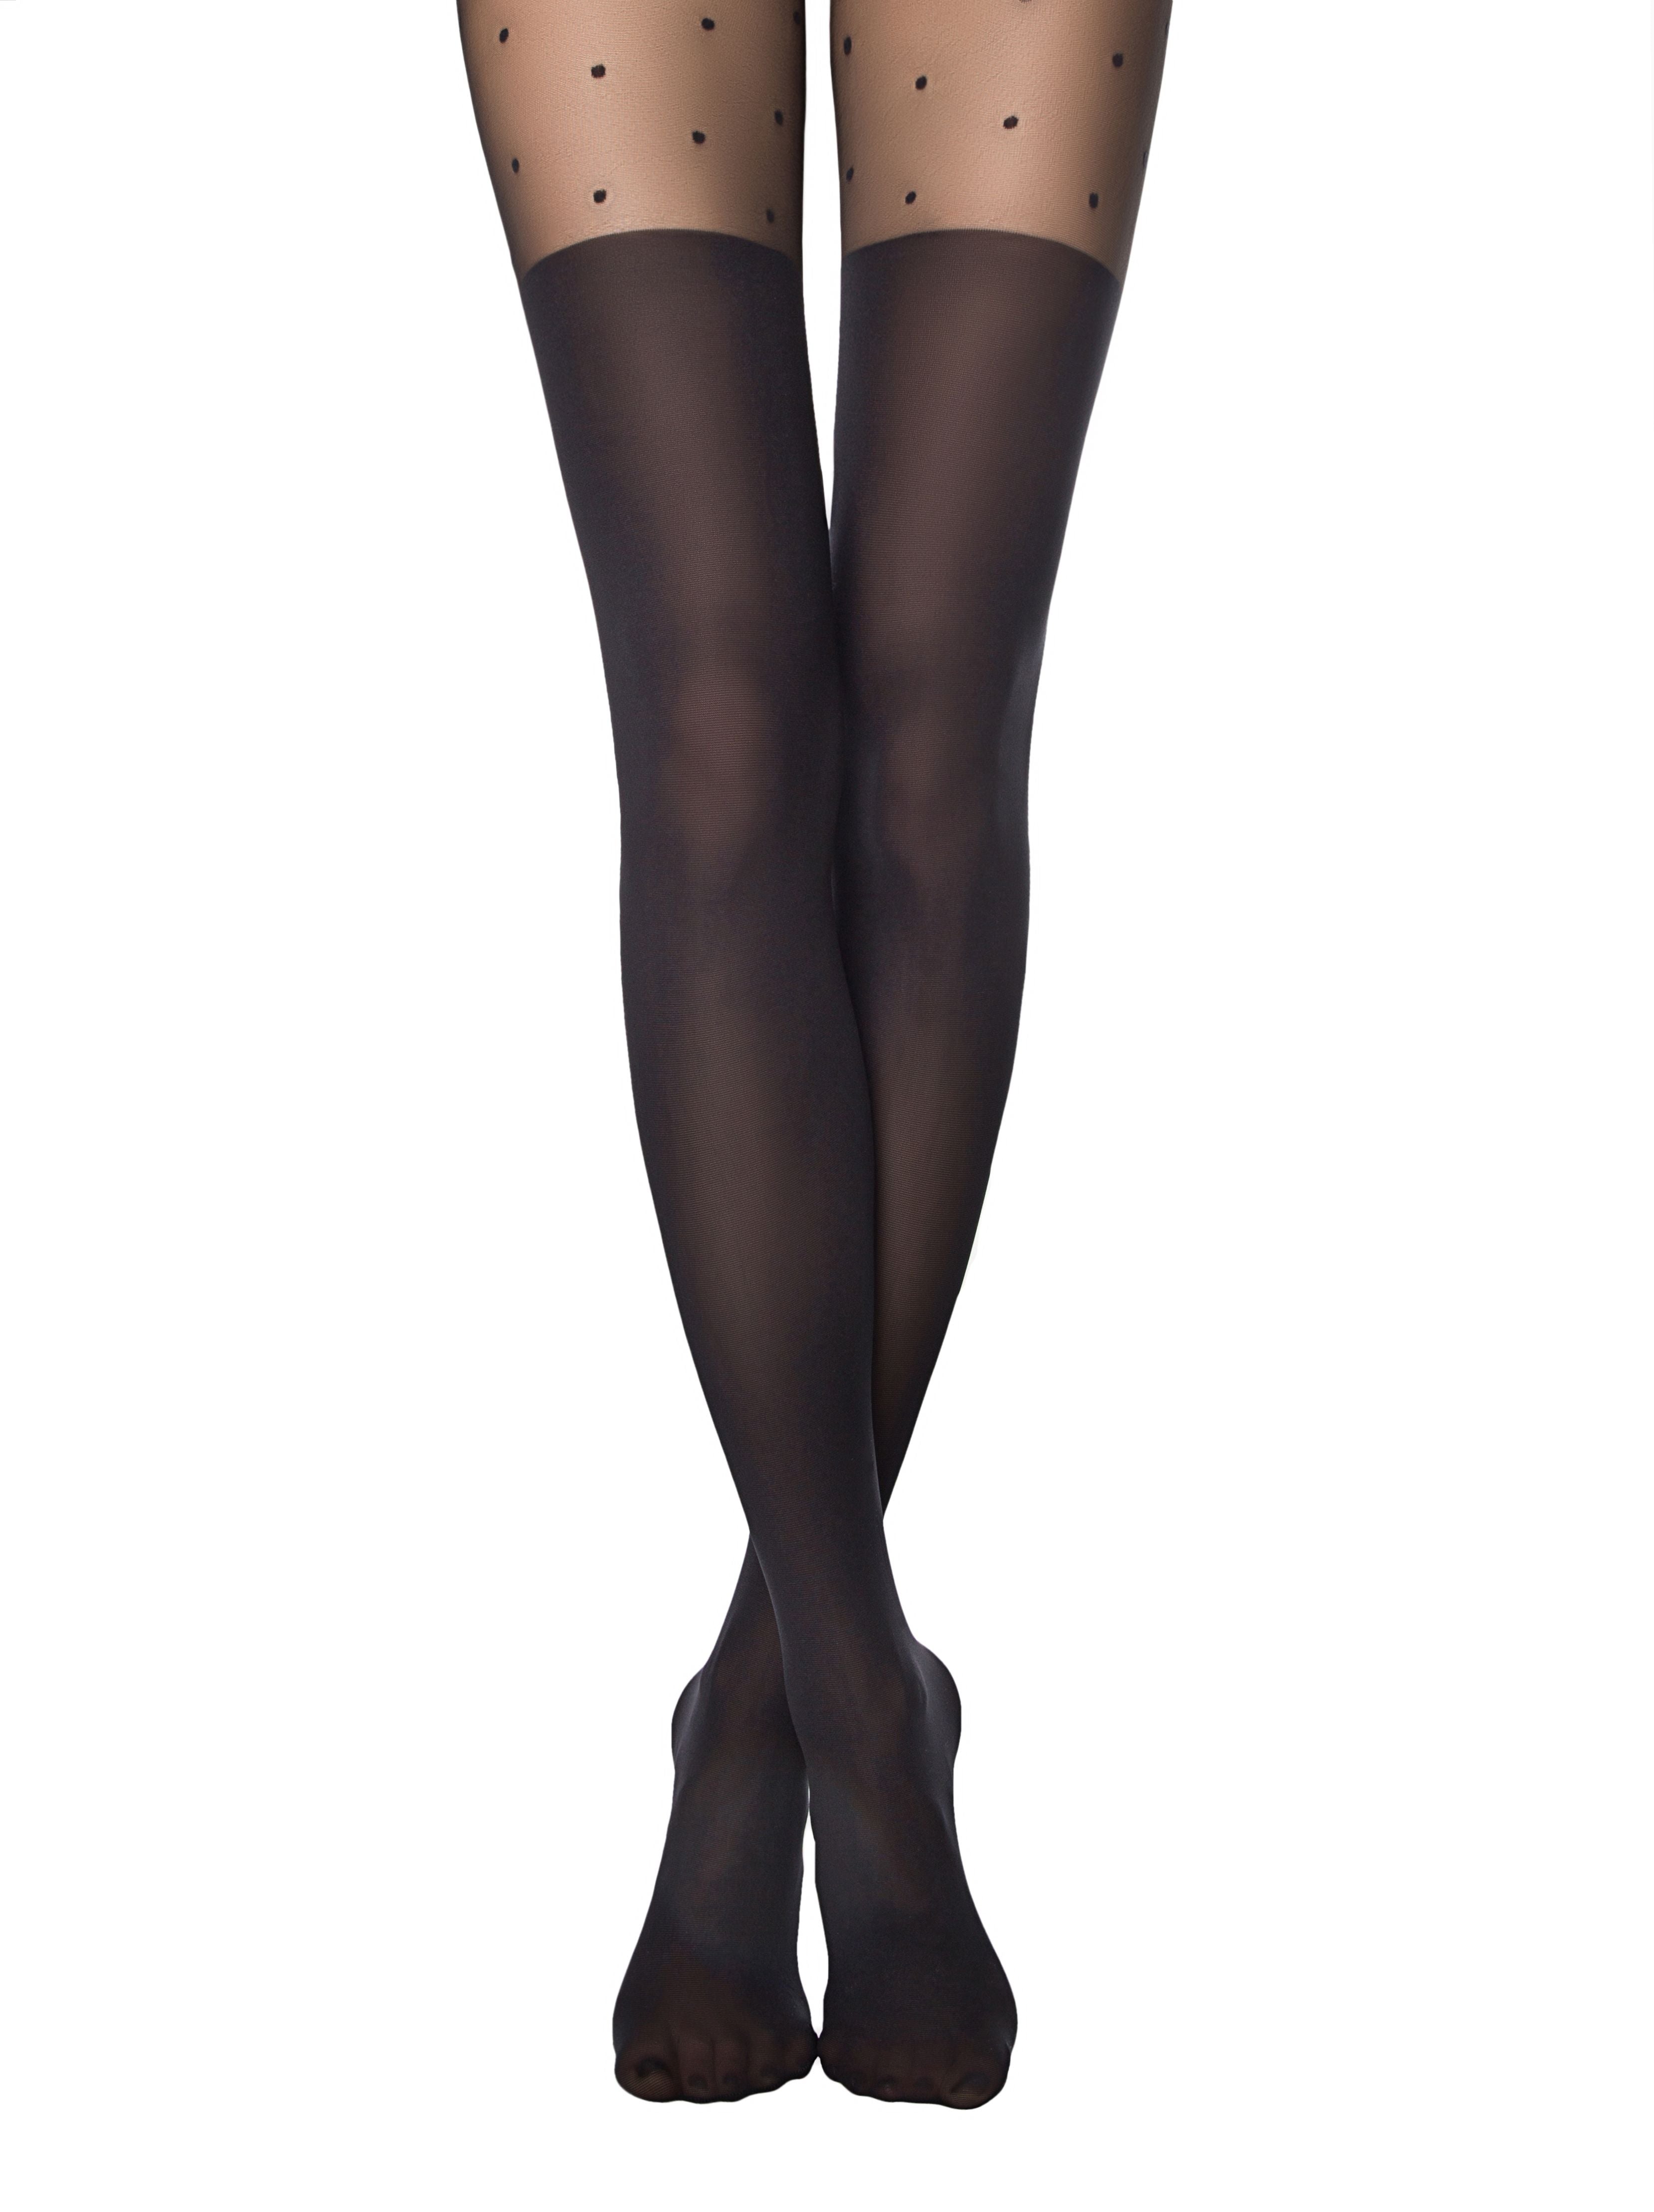 Črne hlačne nogavice v videzu nadkolenk s pikčastim vzorcem v zgornjem delu Conte Elegant Sensation